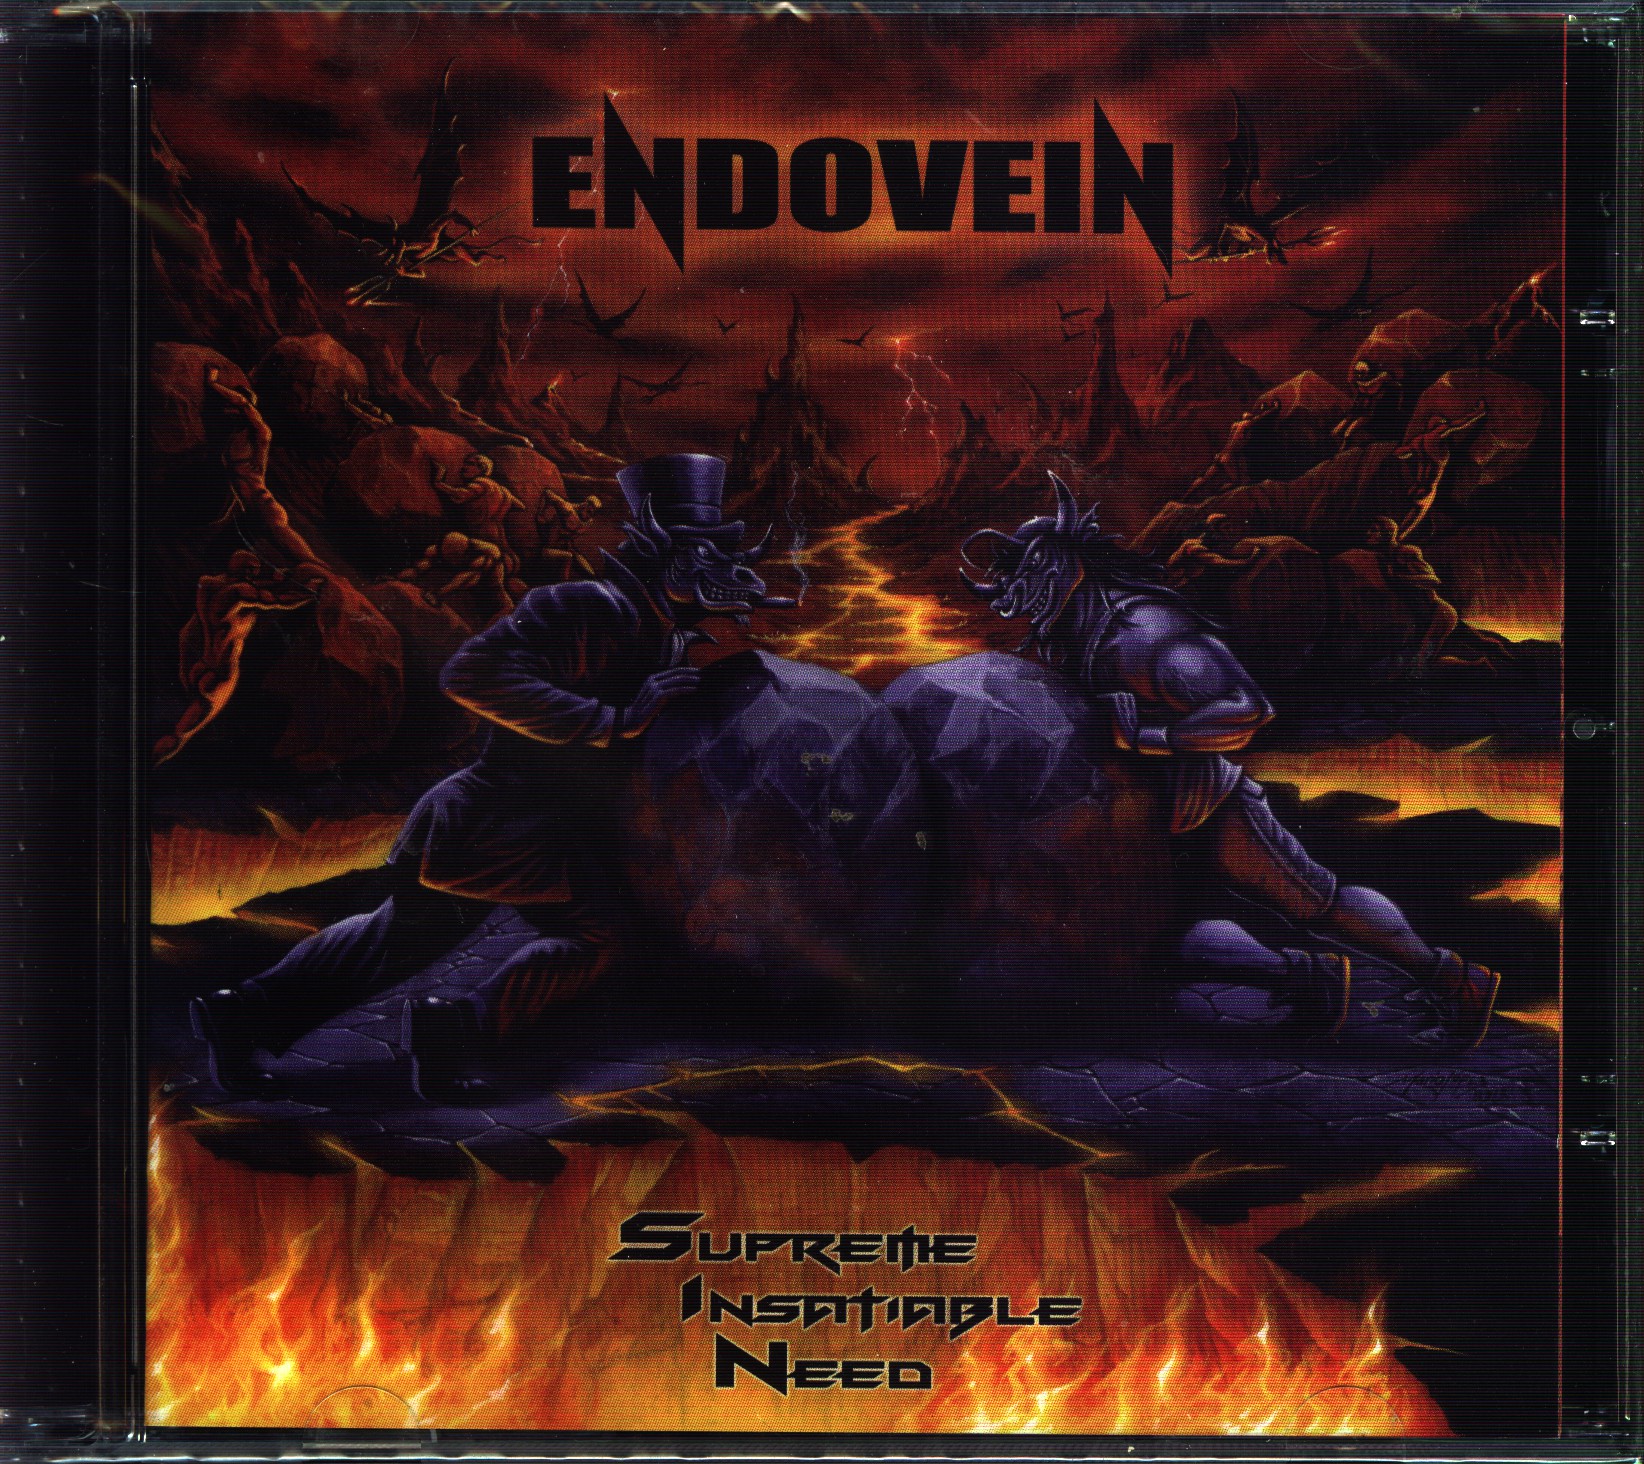 Endovein - Supreme Insatiable Need CD